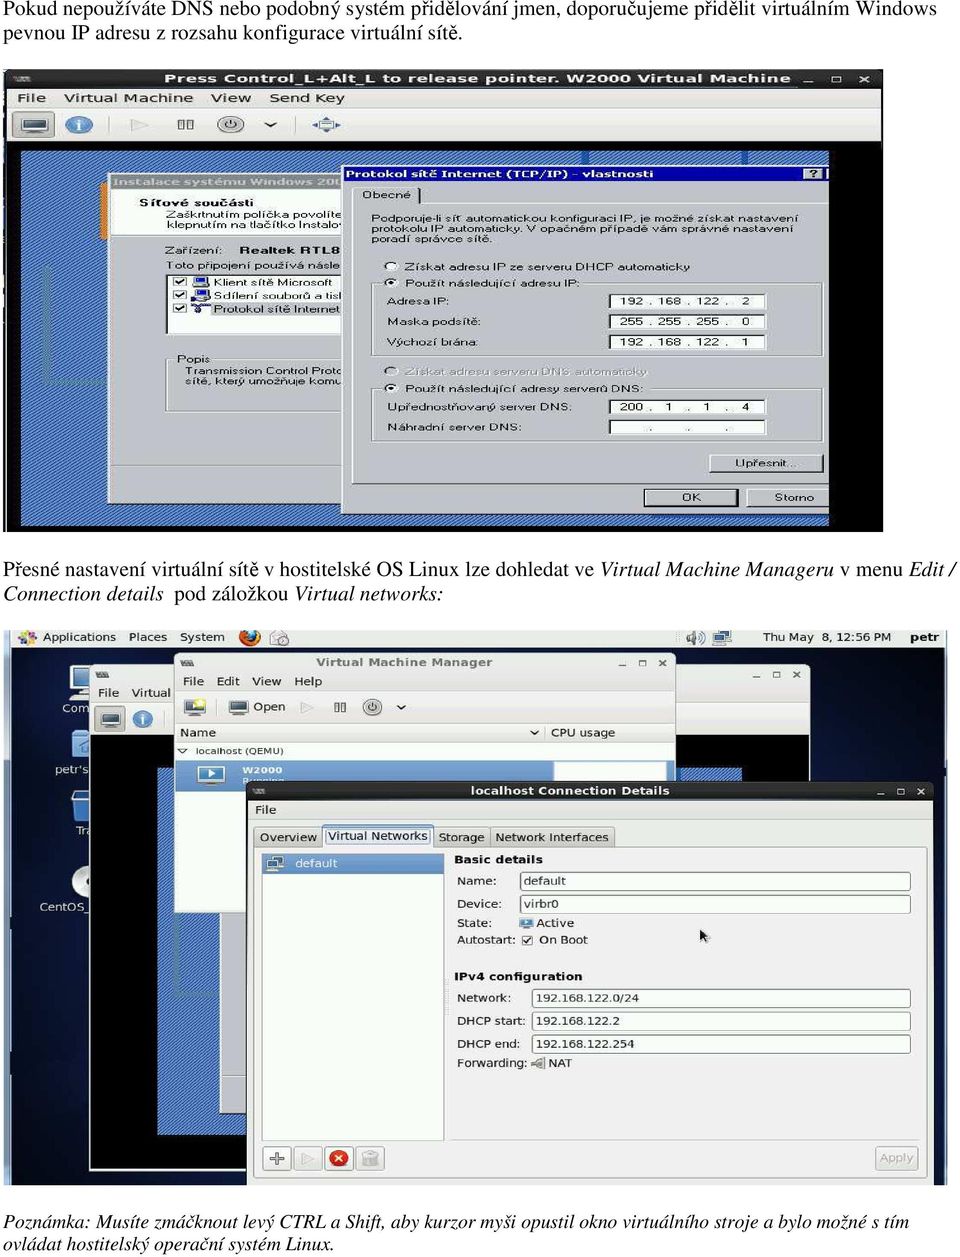 Přesné nastavení virtuální sítě v hostitelské OS Linux lze dohledat ve Virtual Machine Manageru v menu Edit /